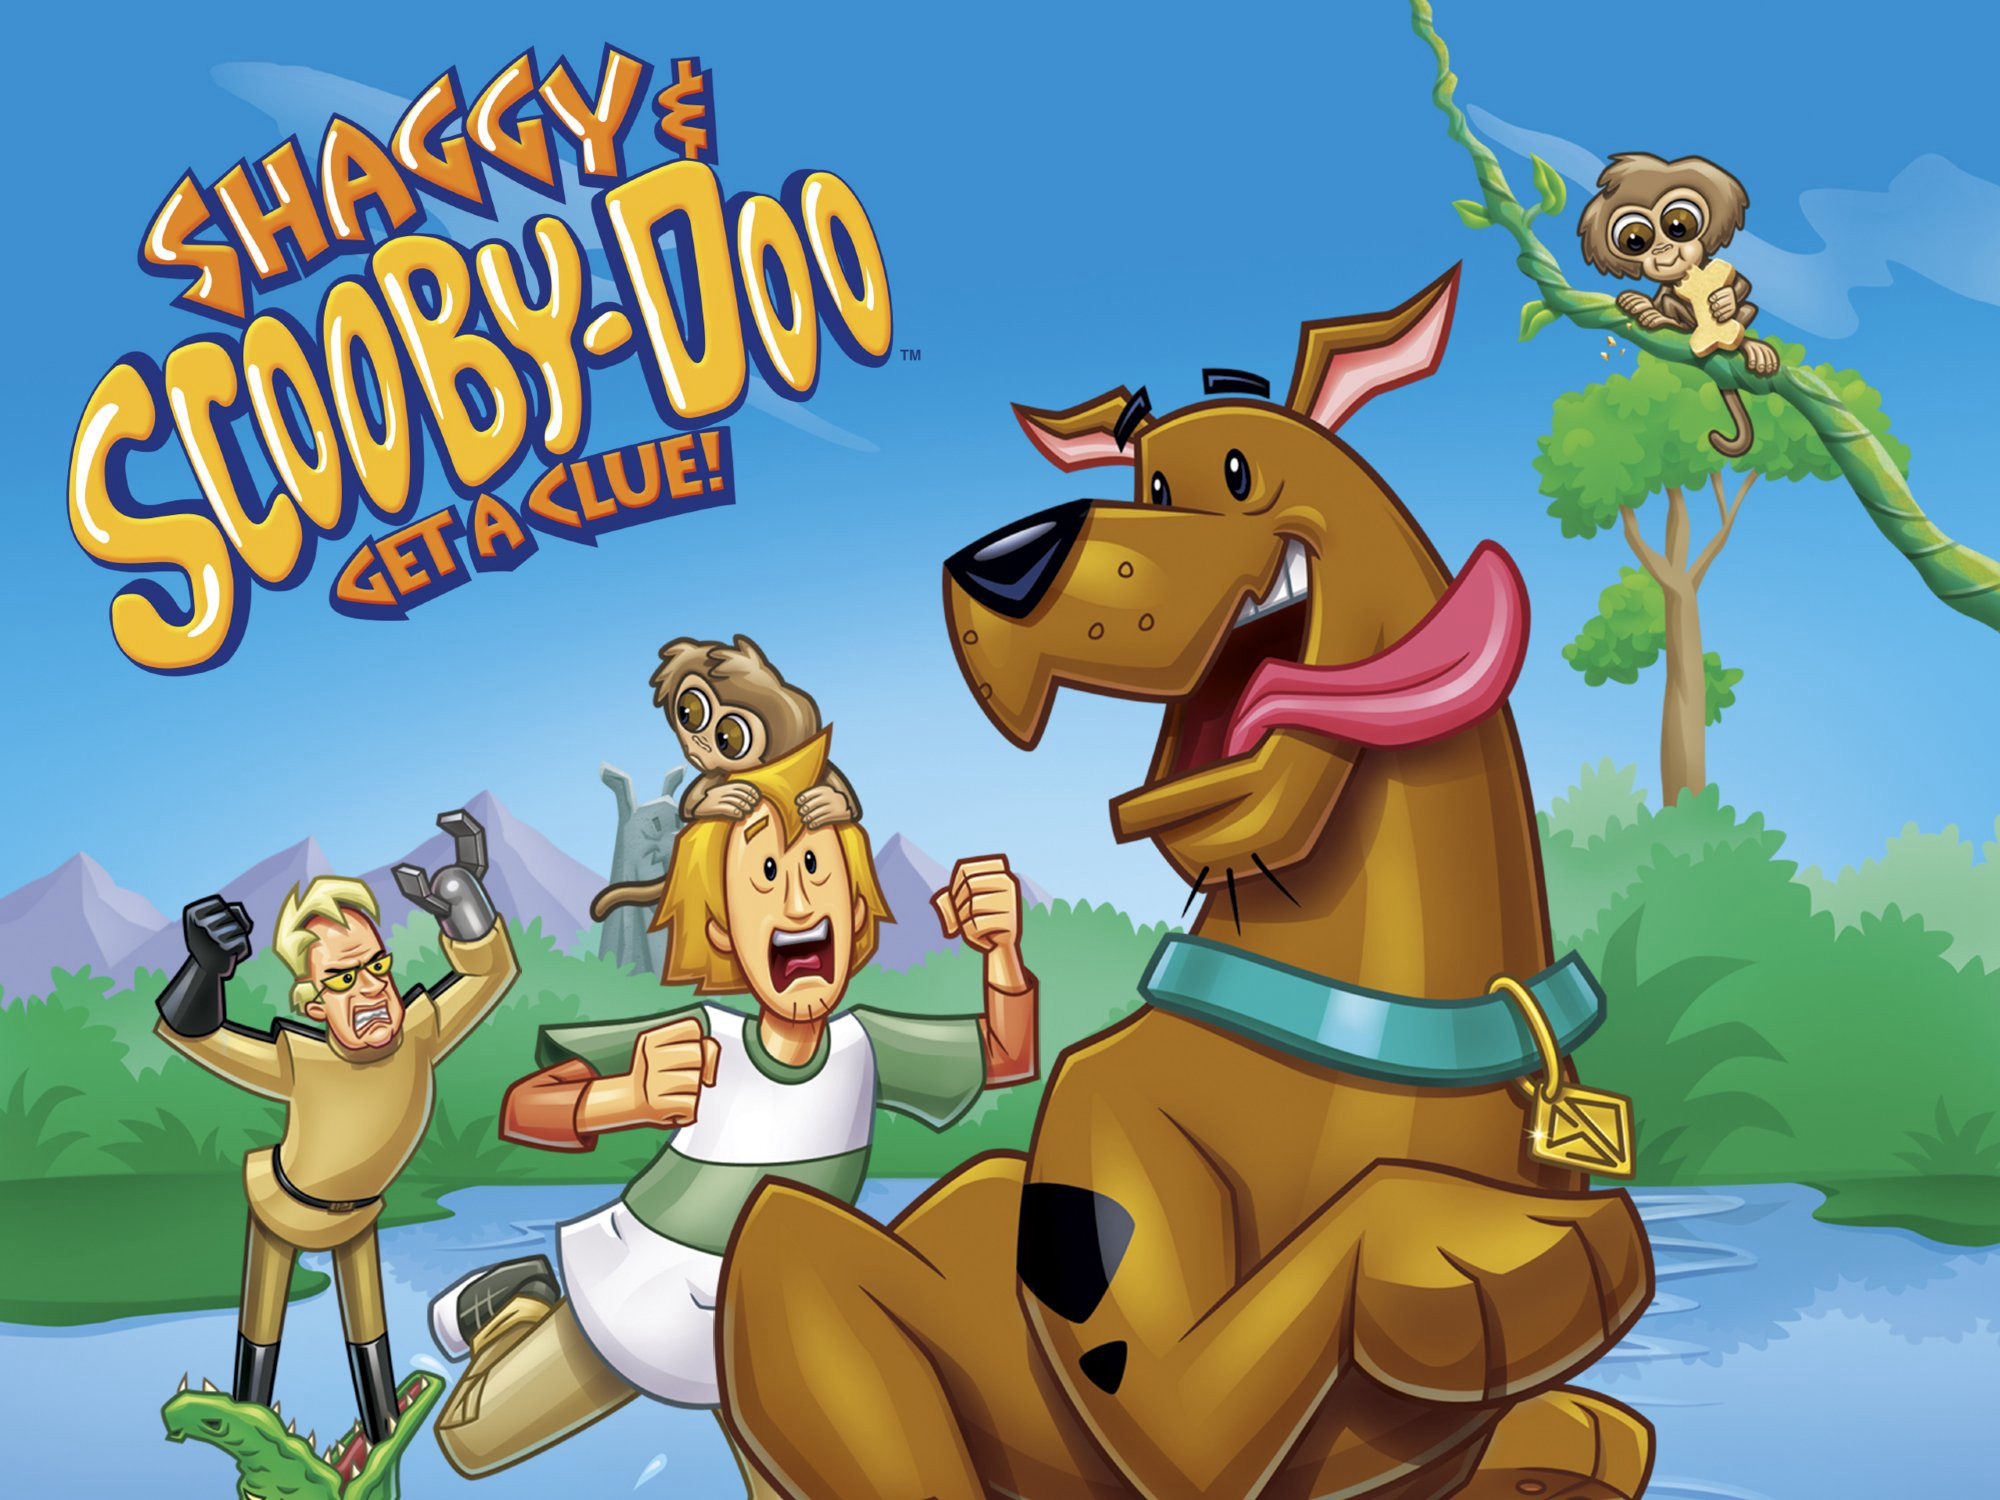 Shaggy & Scooby-Doo Get a Clue! (Season 2) / Shaggy & Scooby-Doo Get a Clue! (Season 2) (2007)